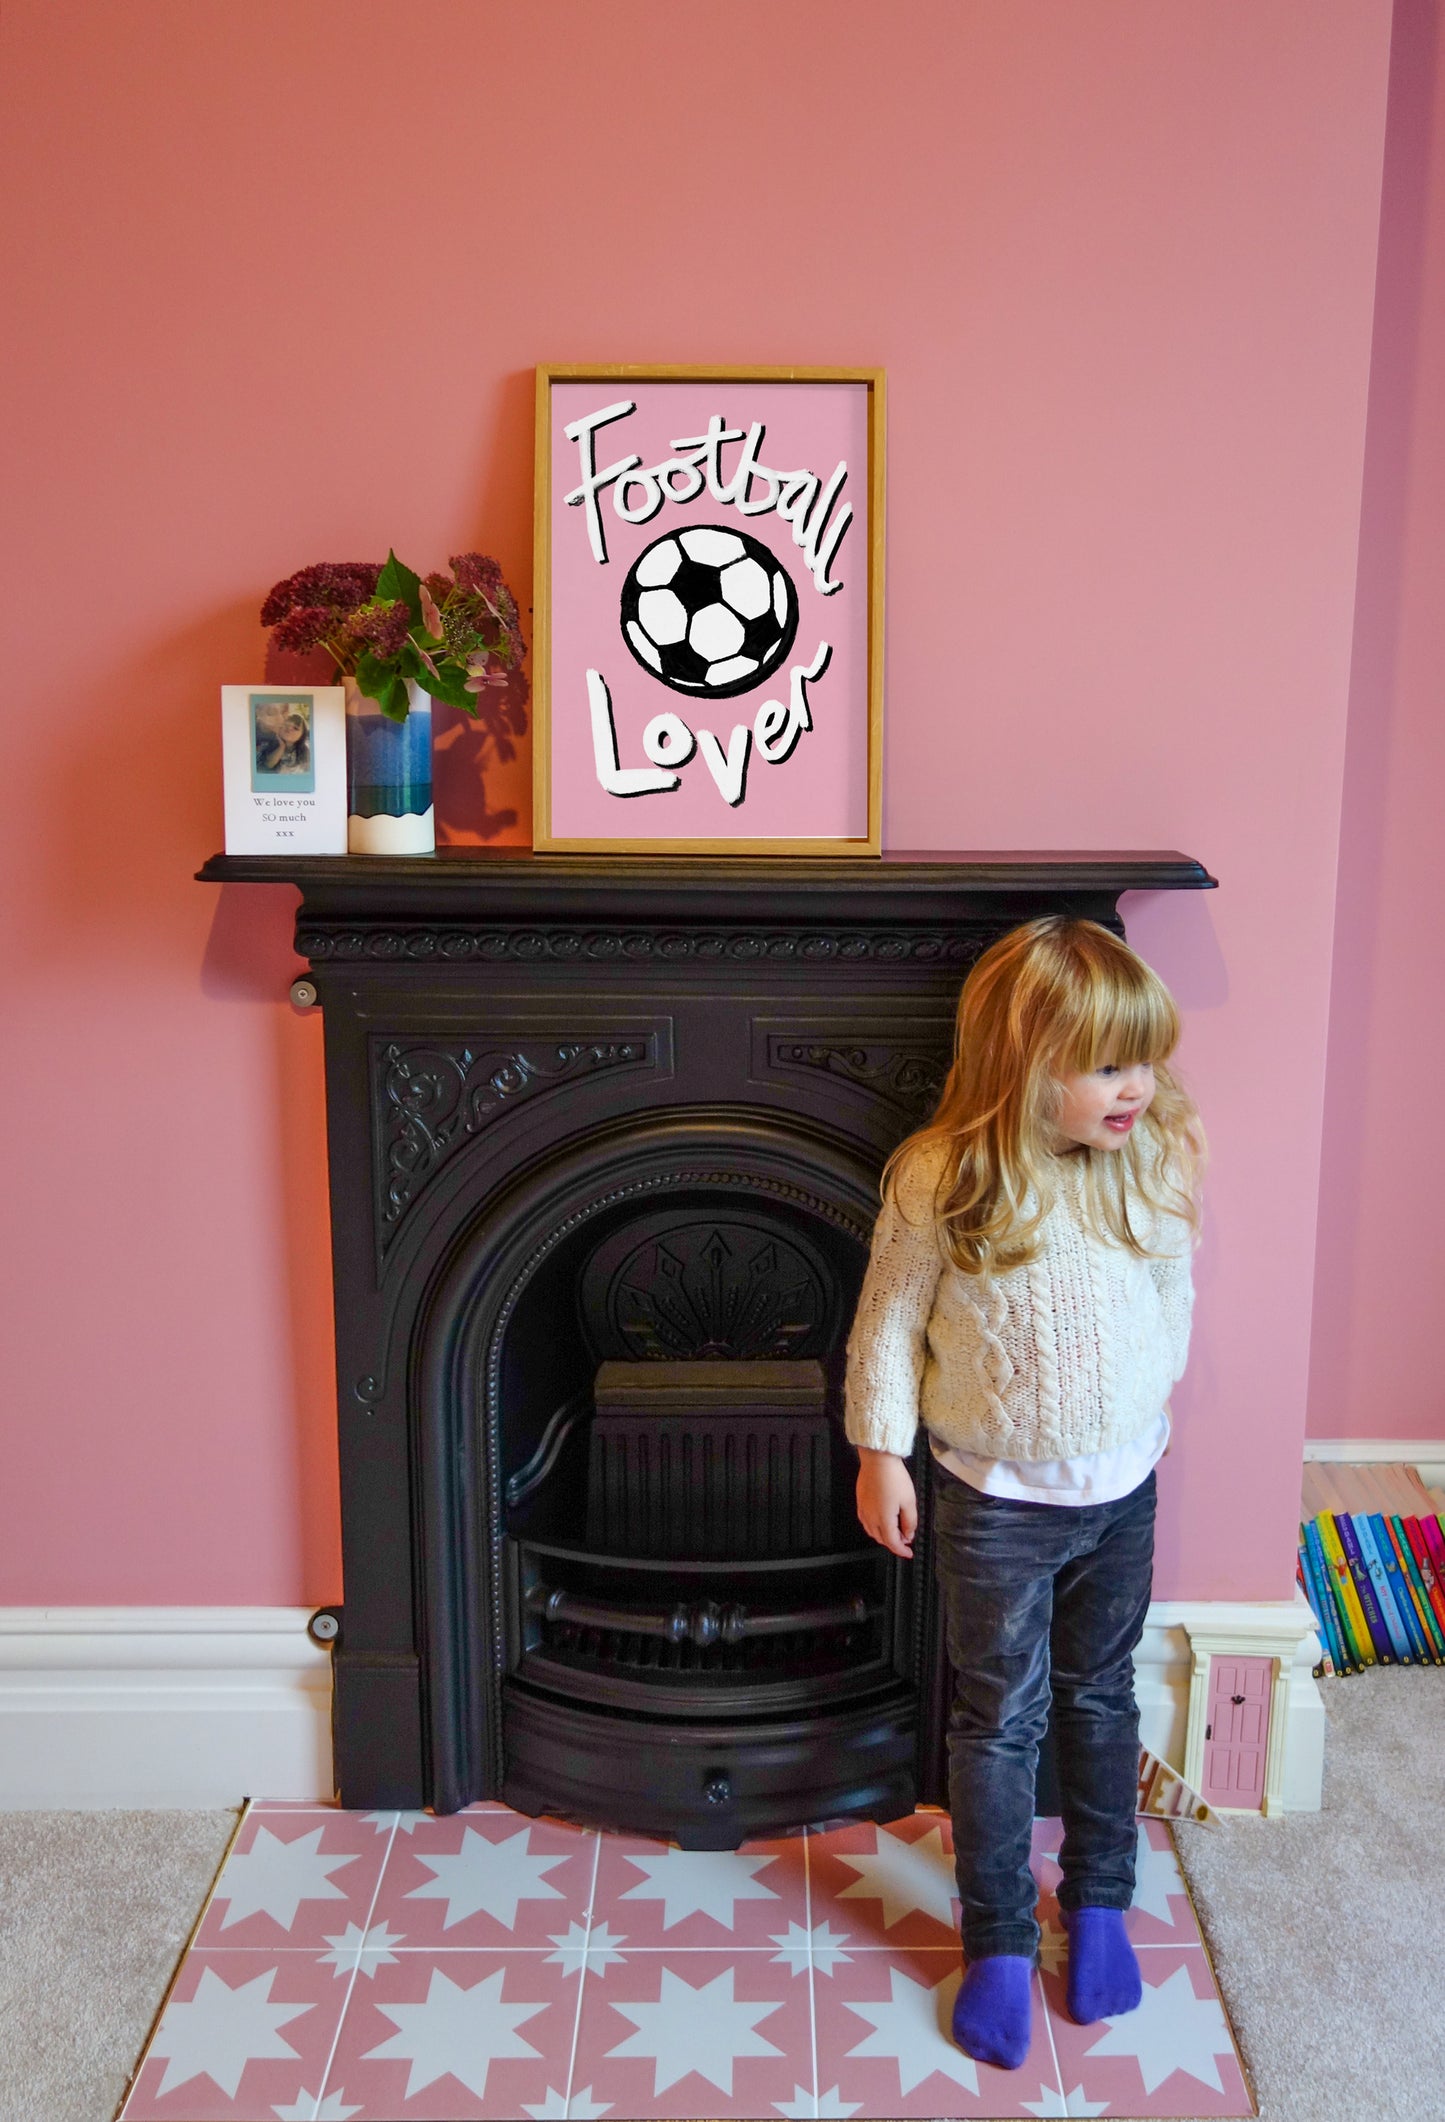 Football Lover Print - Light Pink, White, Black Framed Print